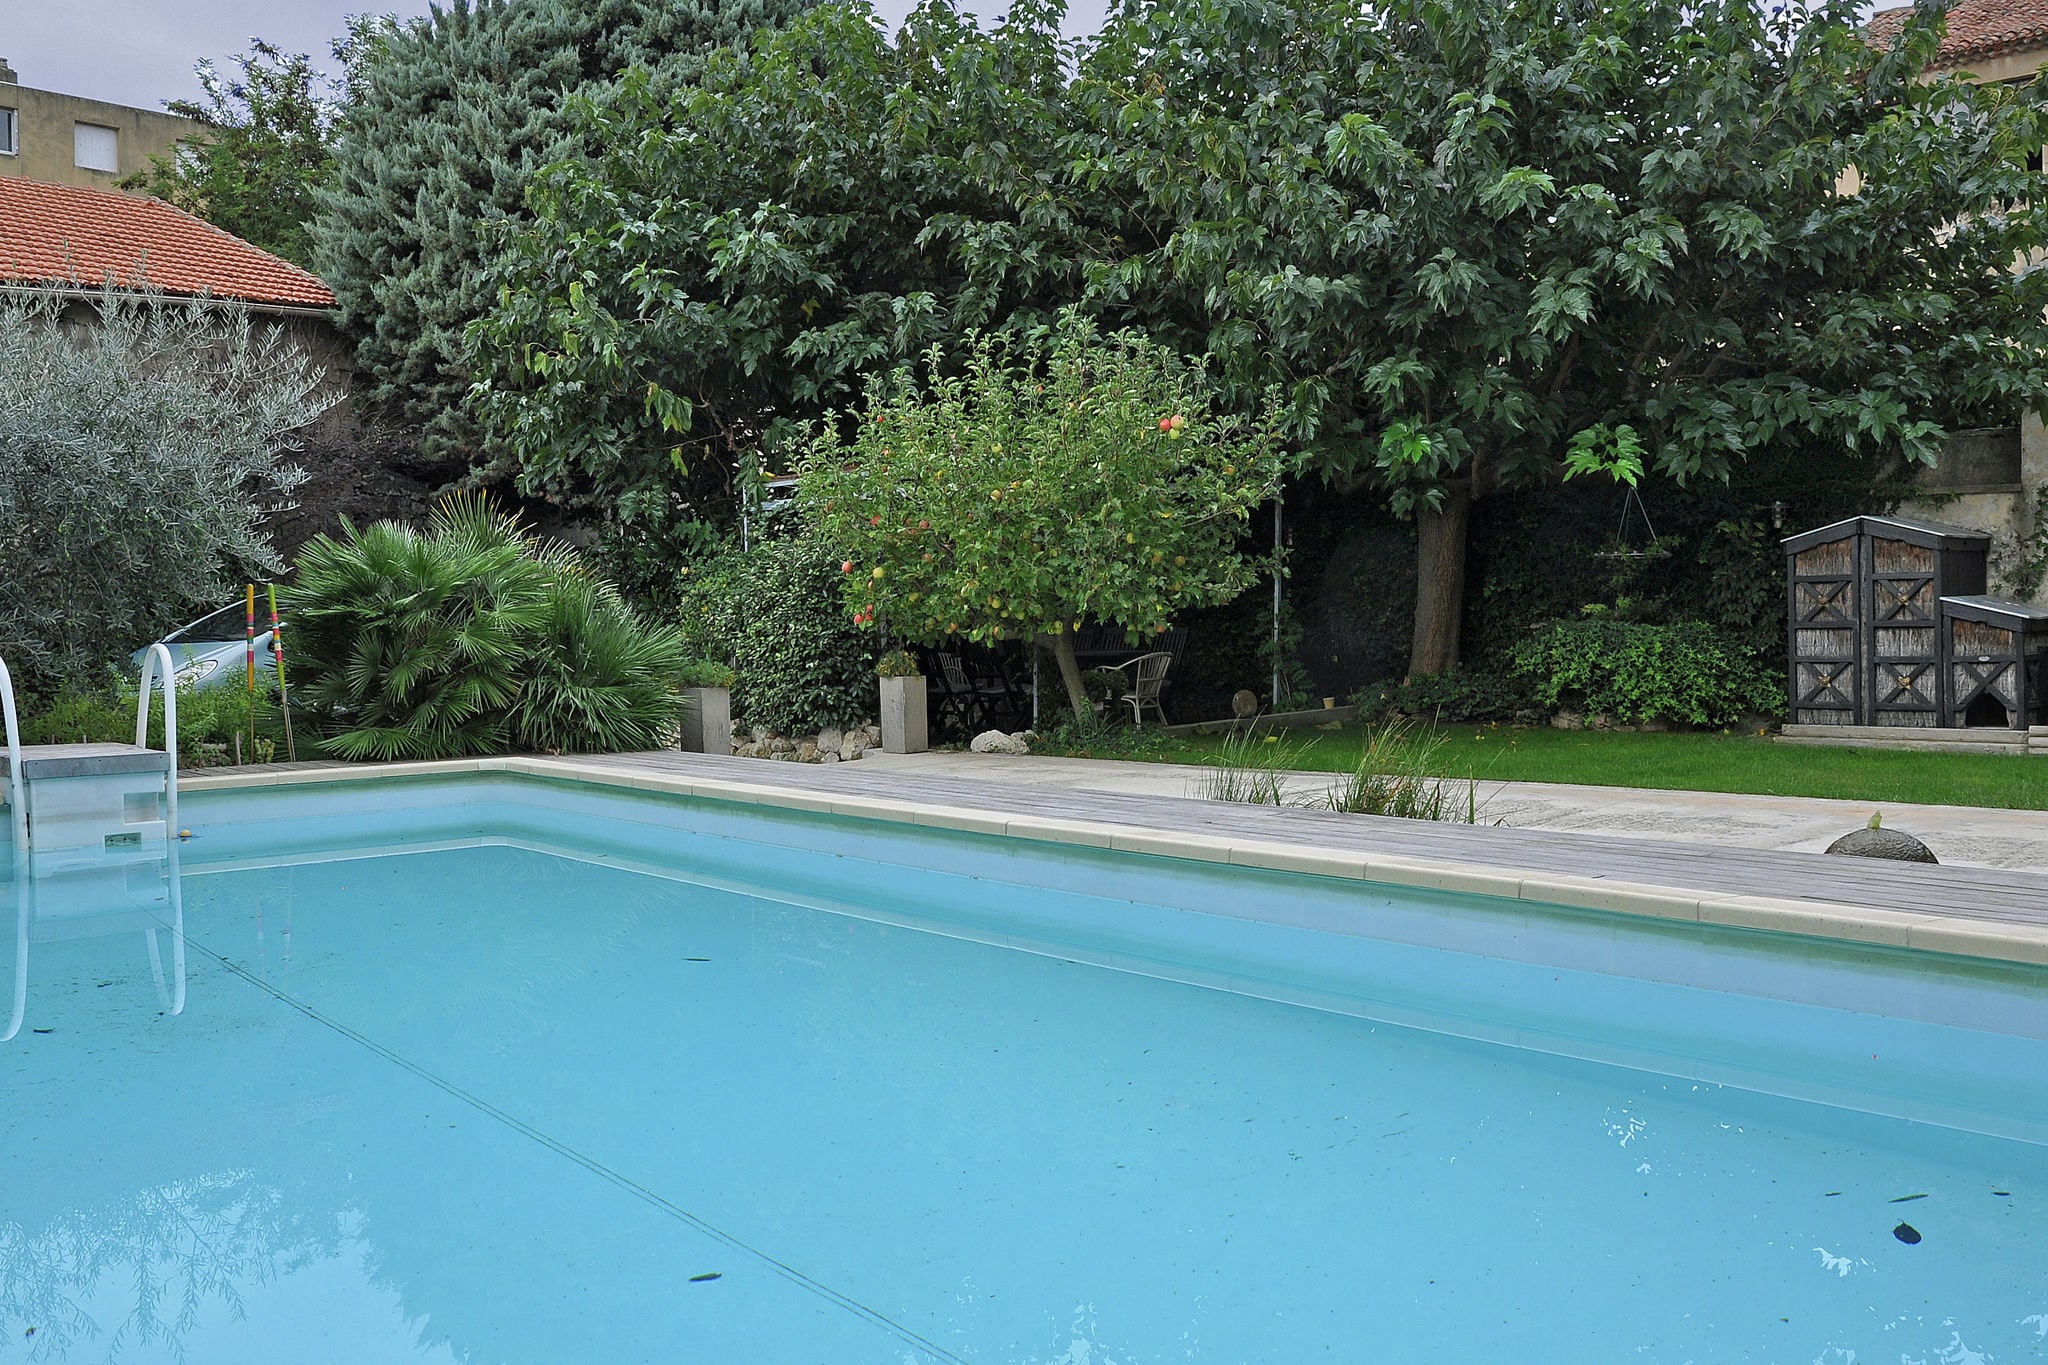 Schitterende en stijlvolle stadswoning met privé zwembad midden in Cavaillon